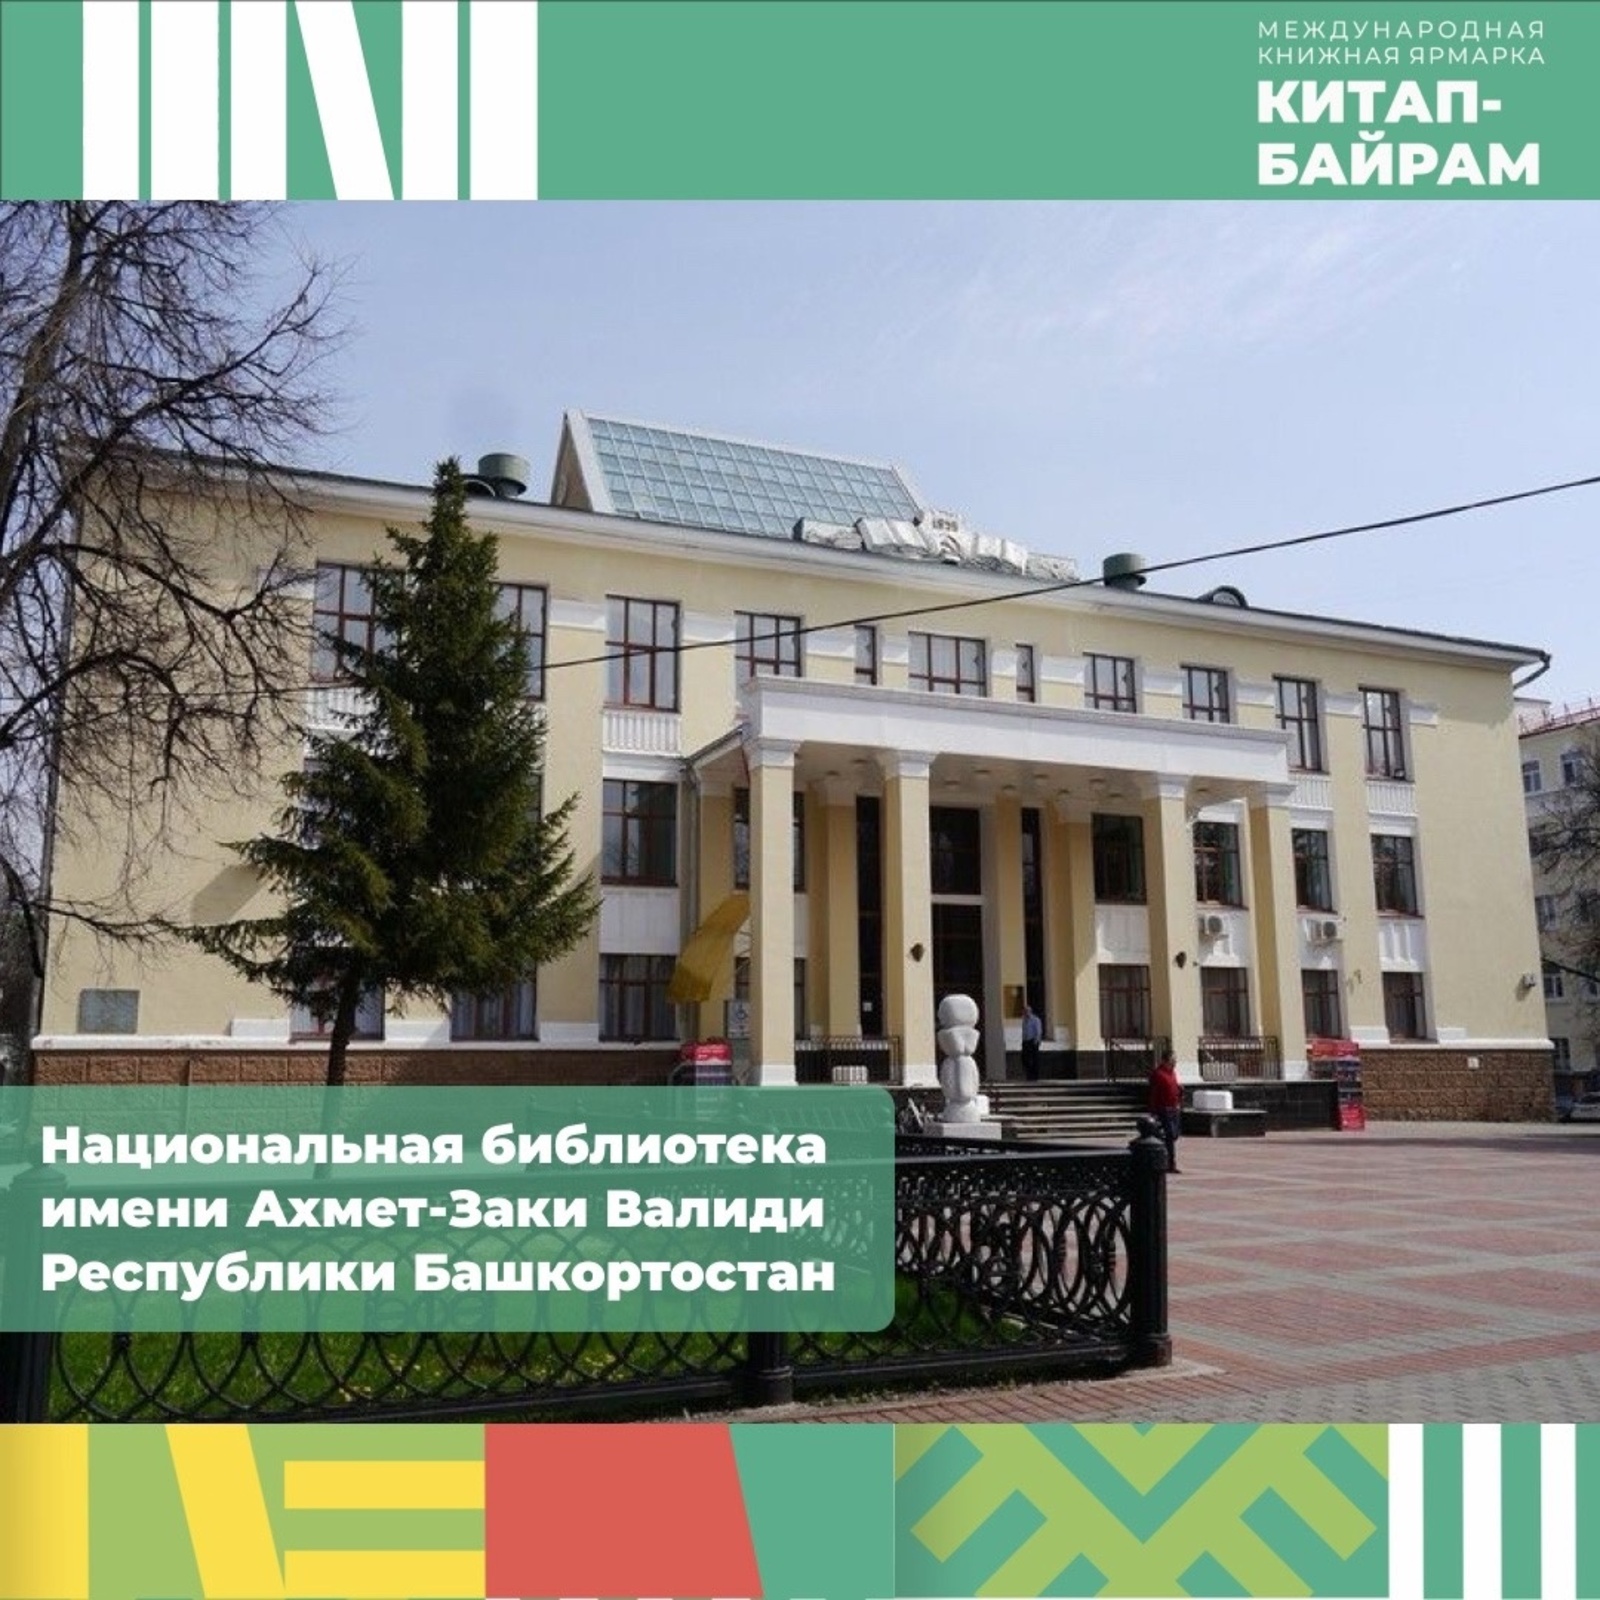 В Национальной библиотеке Башкирии проходит выставка «В книжной памяти мгновения войны»